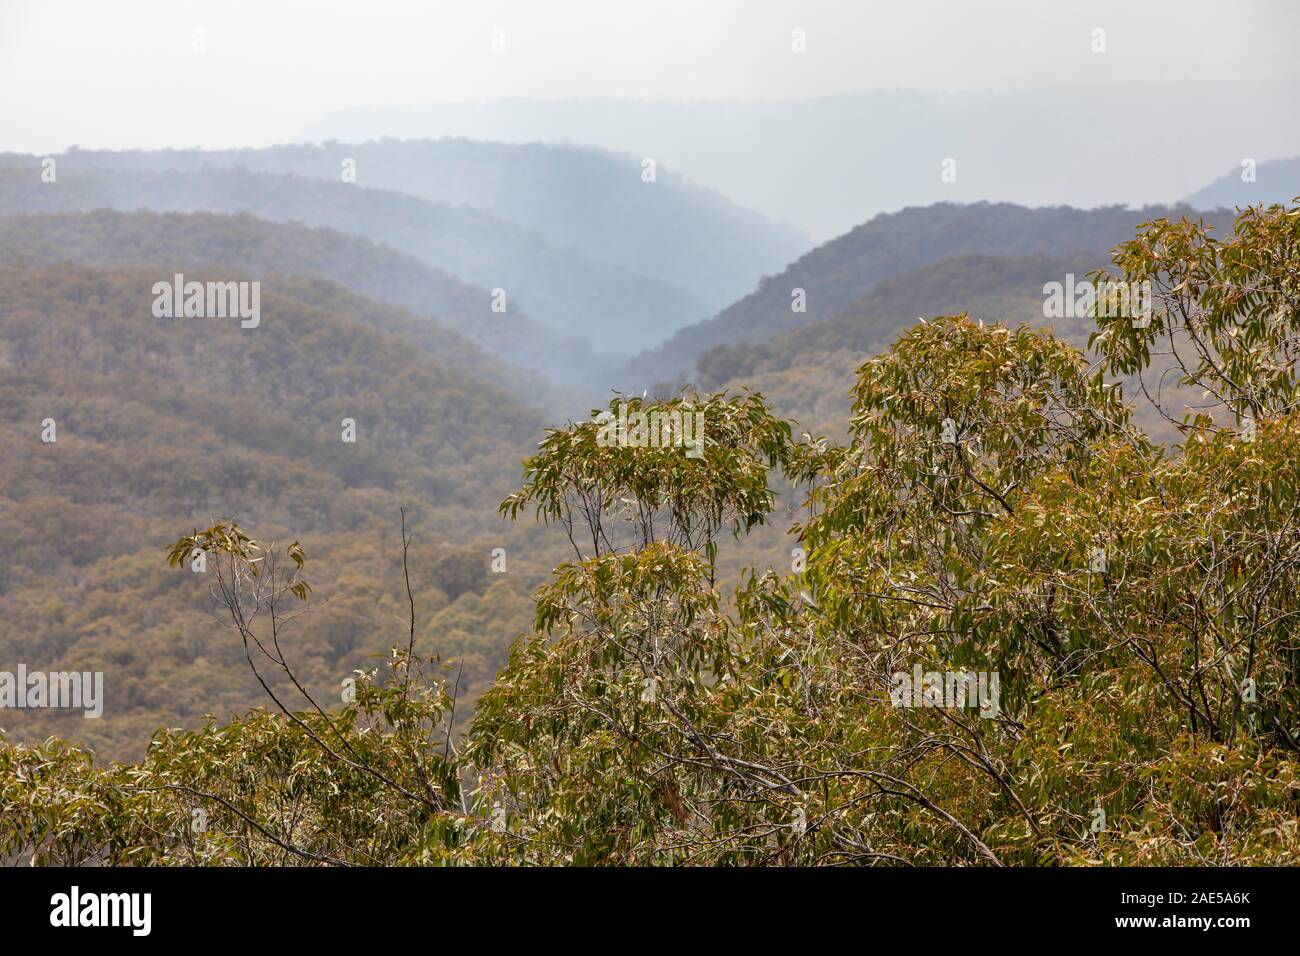 La fumée provenant des feux de brousse dans la brume Capertee Valley National Park, New South Wales, Australie Banque D'Images